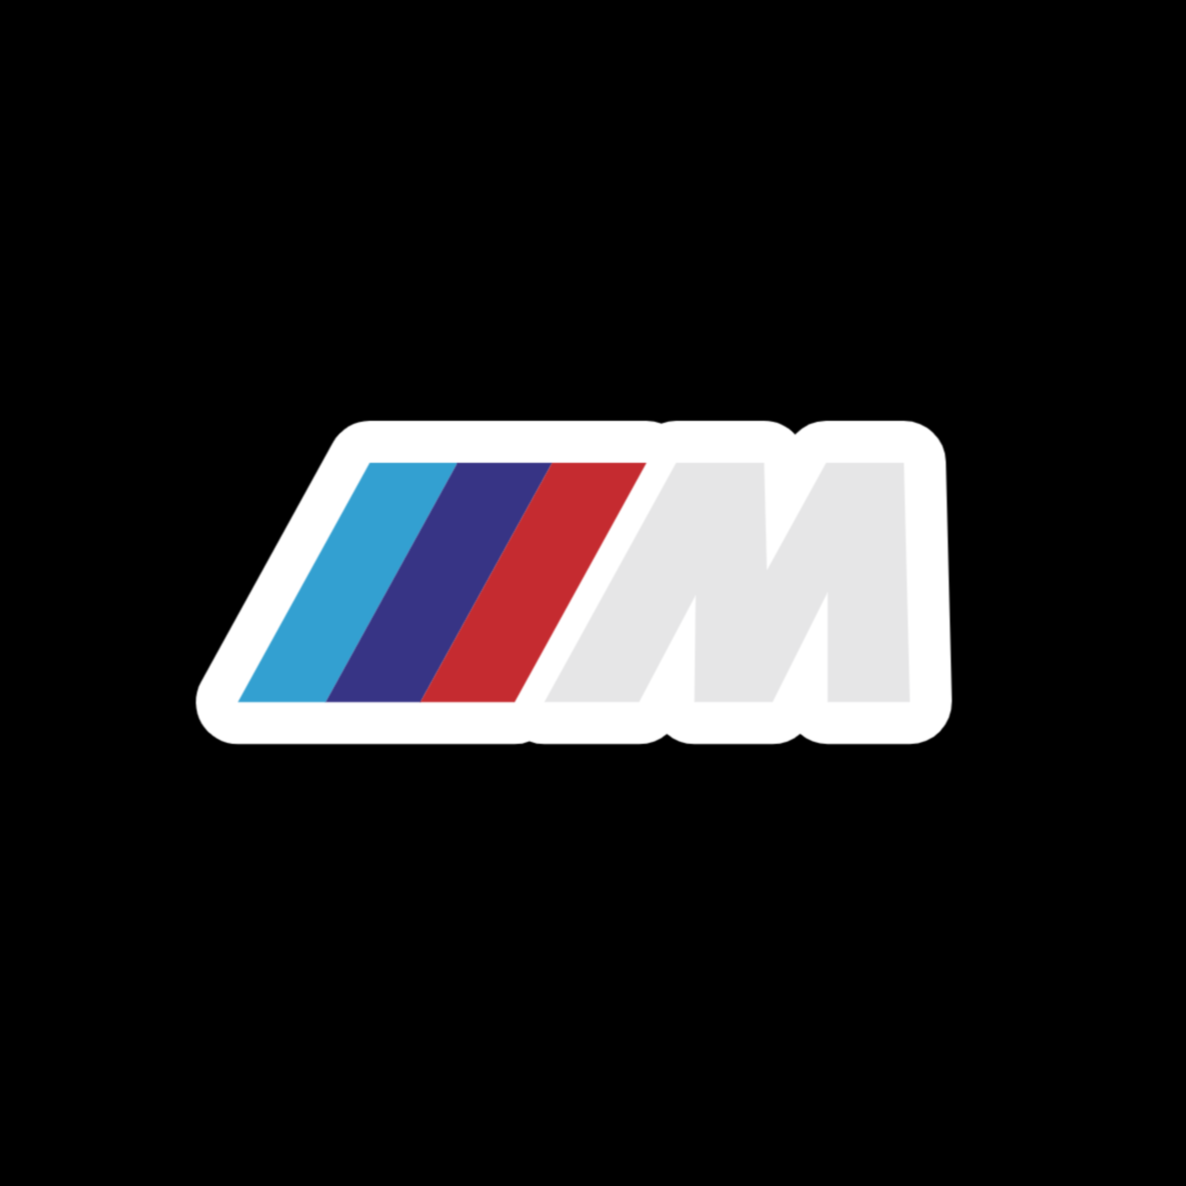 BMW, sticker logo classique BMW - M.